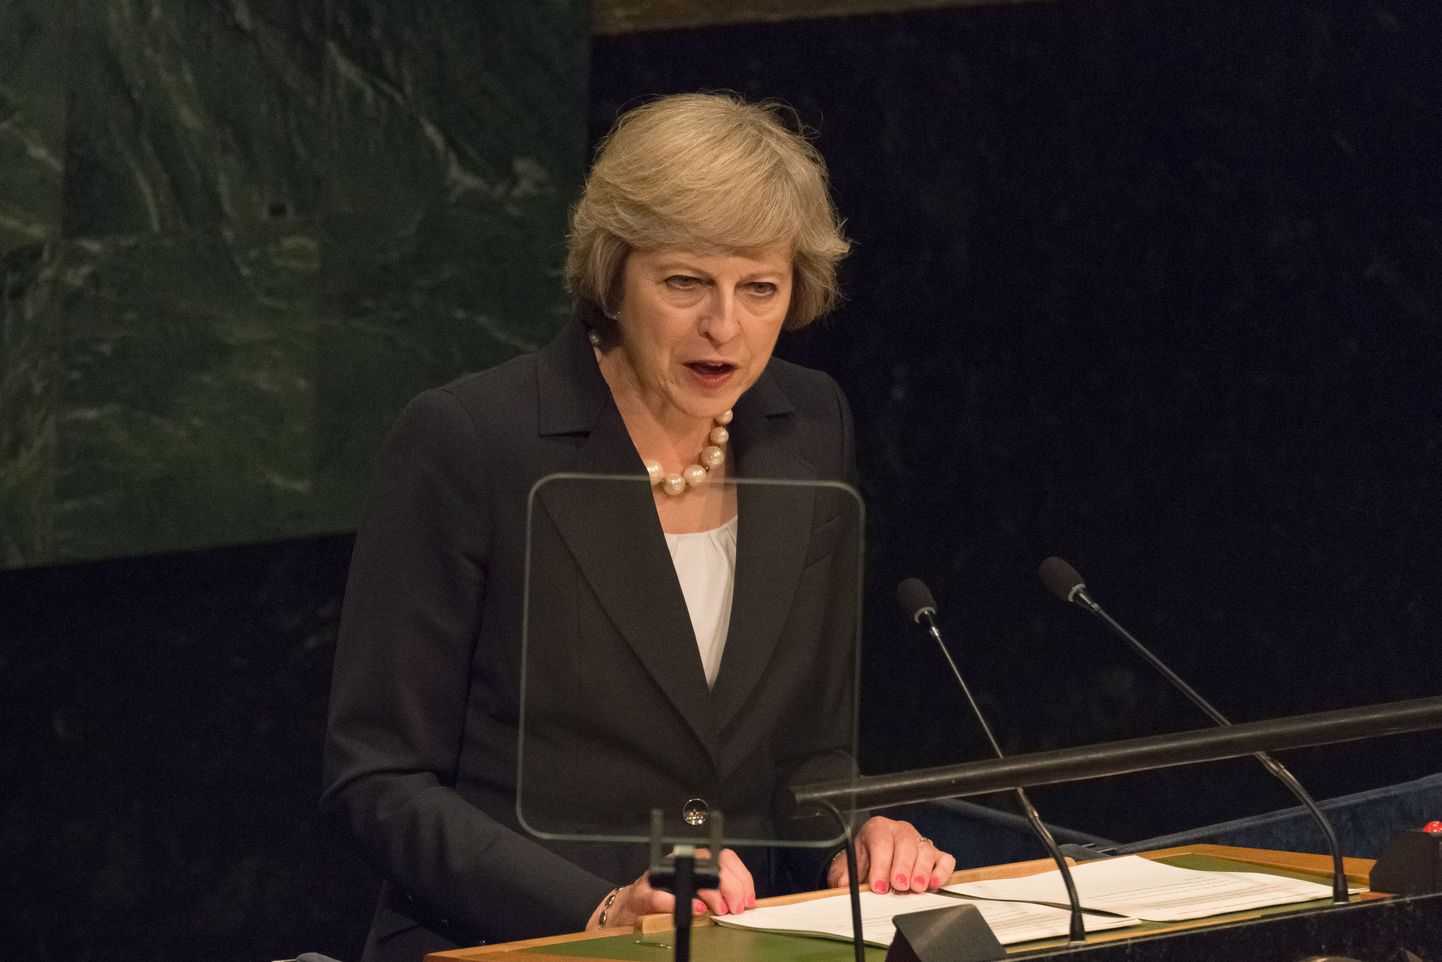 Briti peaminister Theresa May ÜRO Peaassambleel kõnet pidamas.